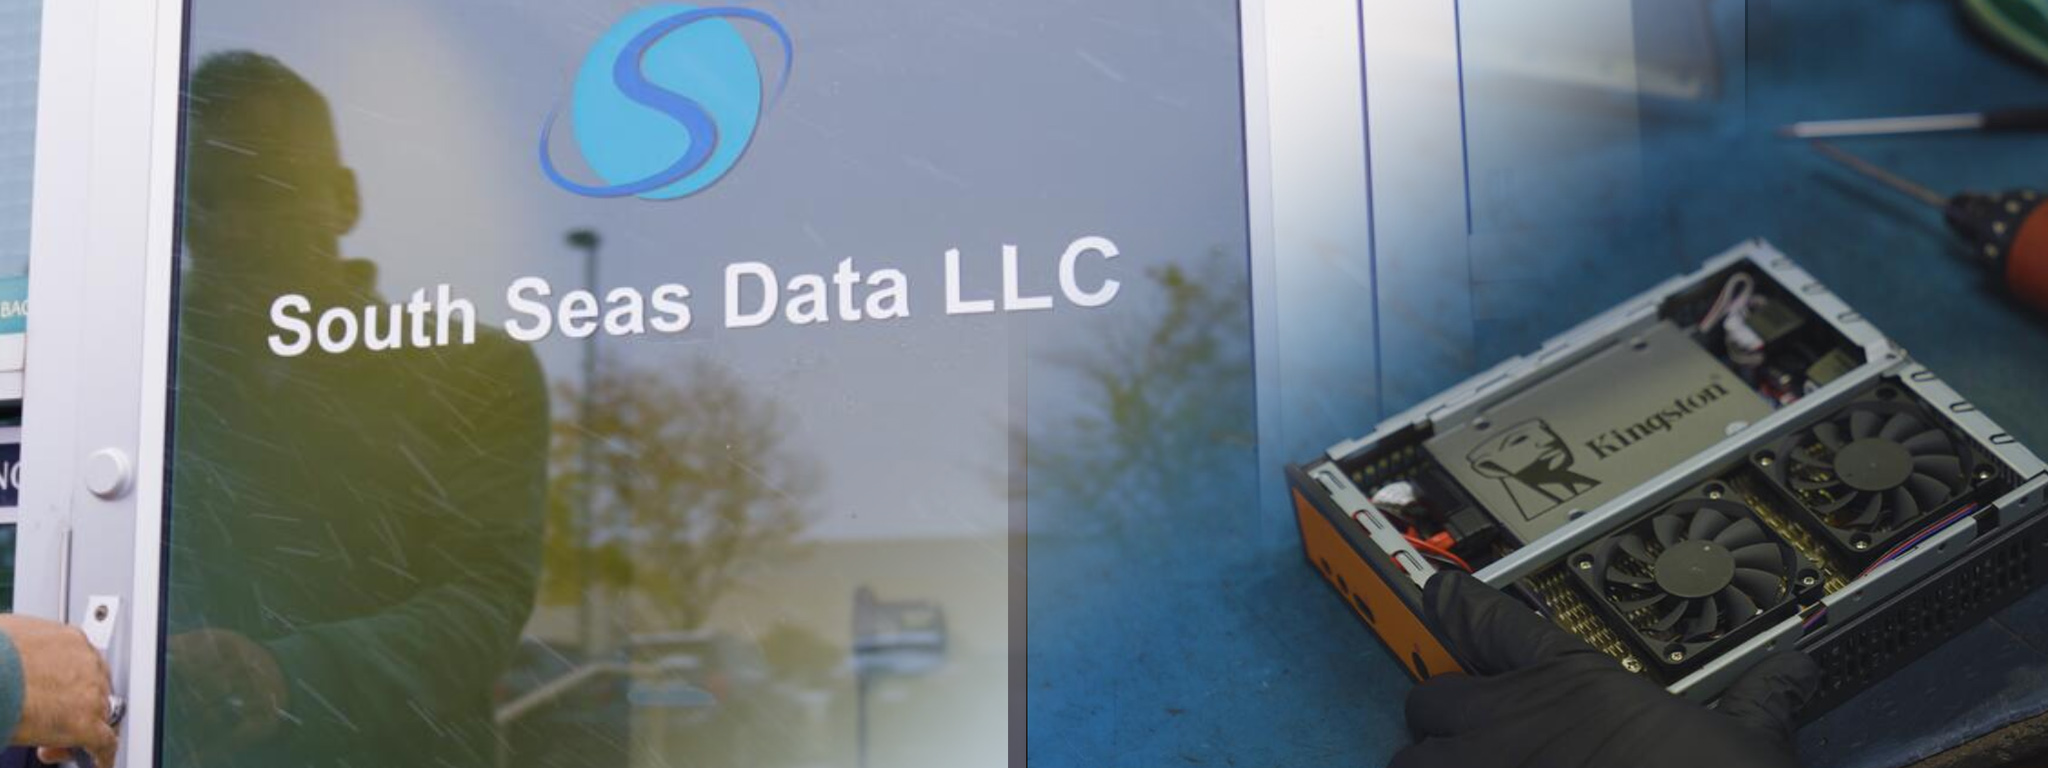 South Seas Data LLC 總部大門的圖像上，疊加著採用 Kingston SSD 固態硬碟系統的圖像。